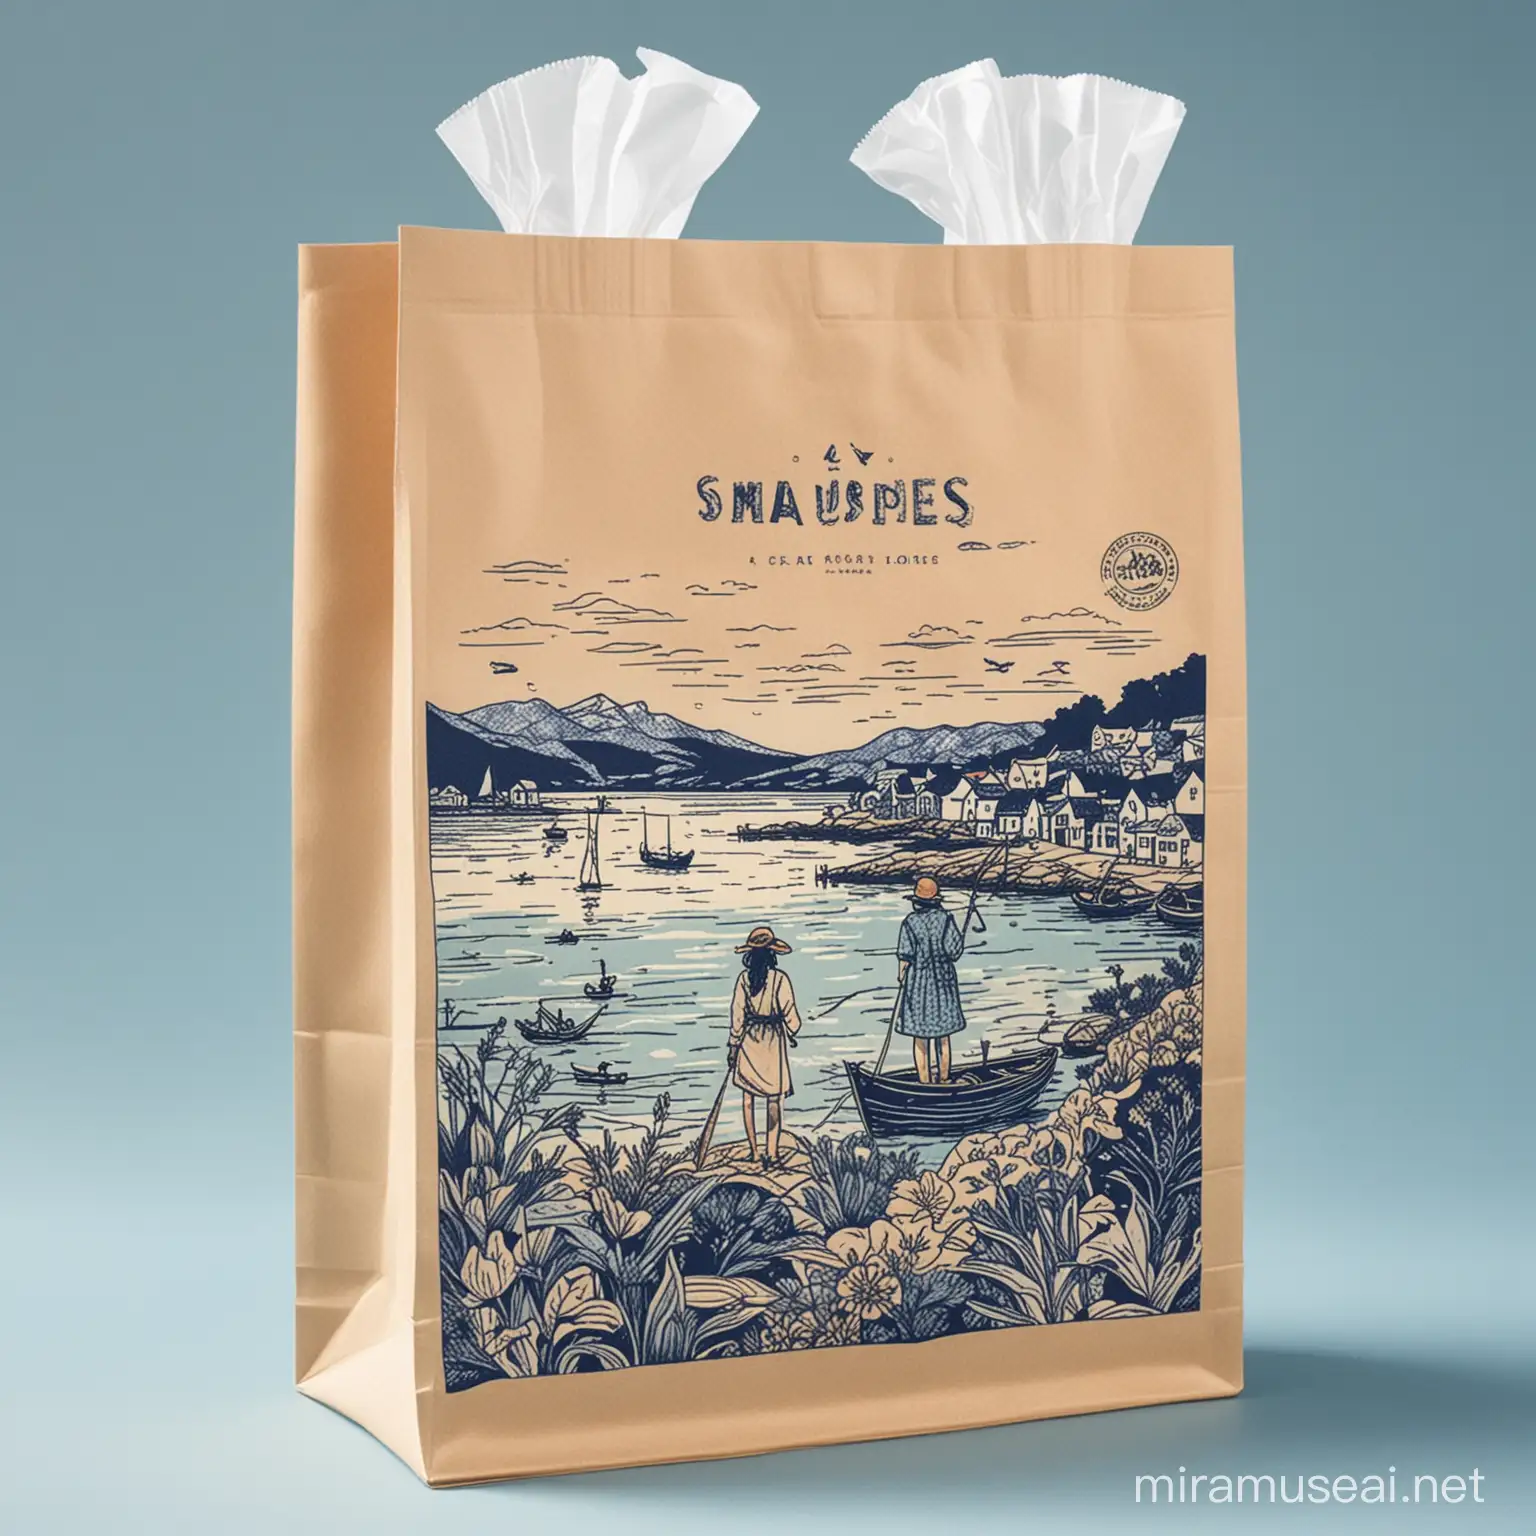 海带食品包装袋，包装袋手绘图案有大海、蓝天和一个渔村少女，画面简约